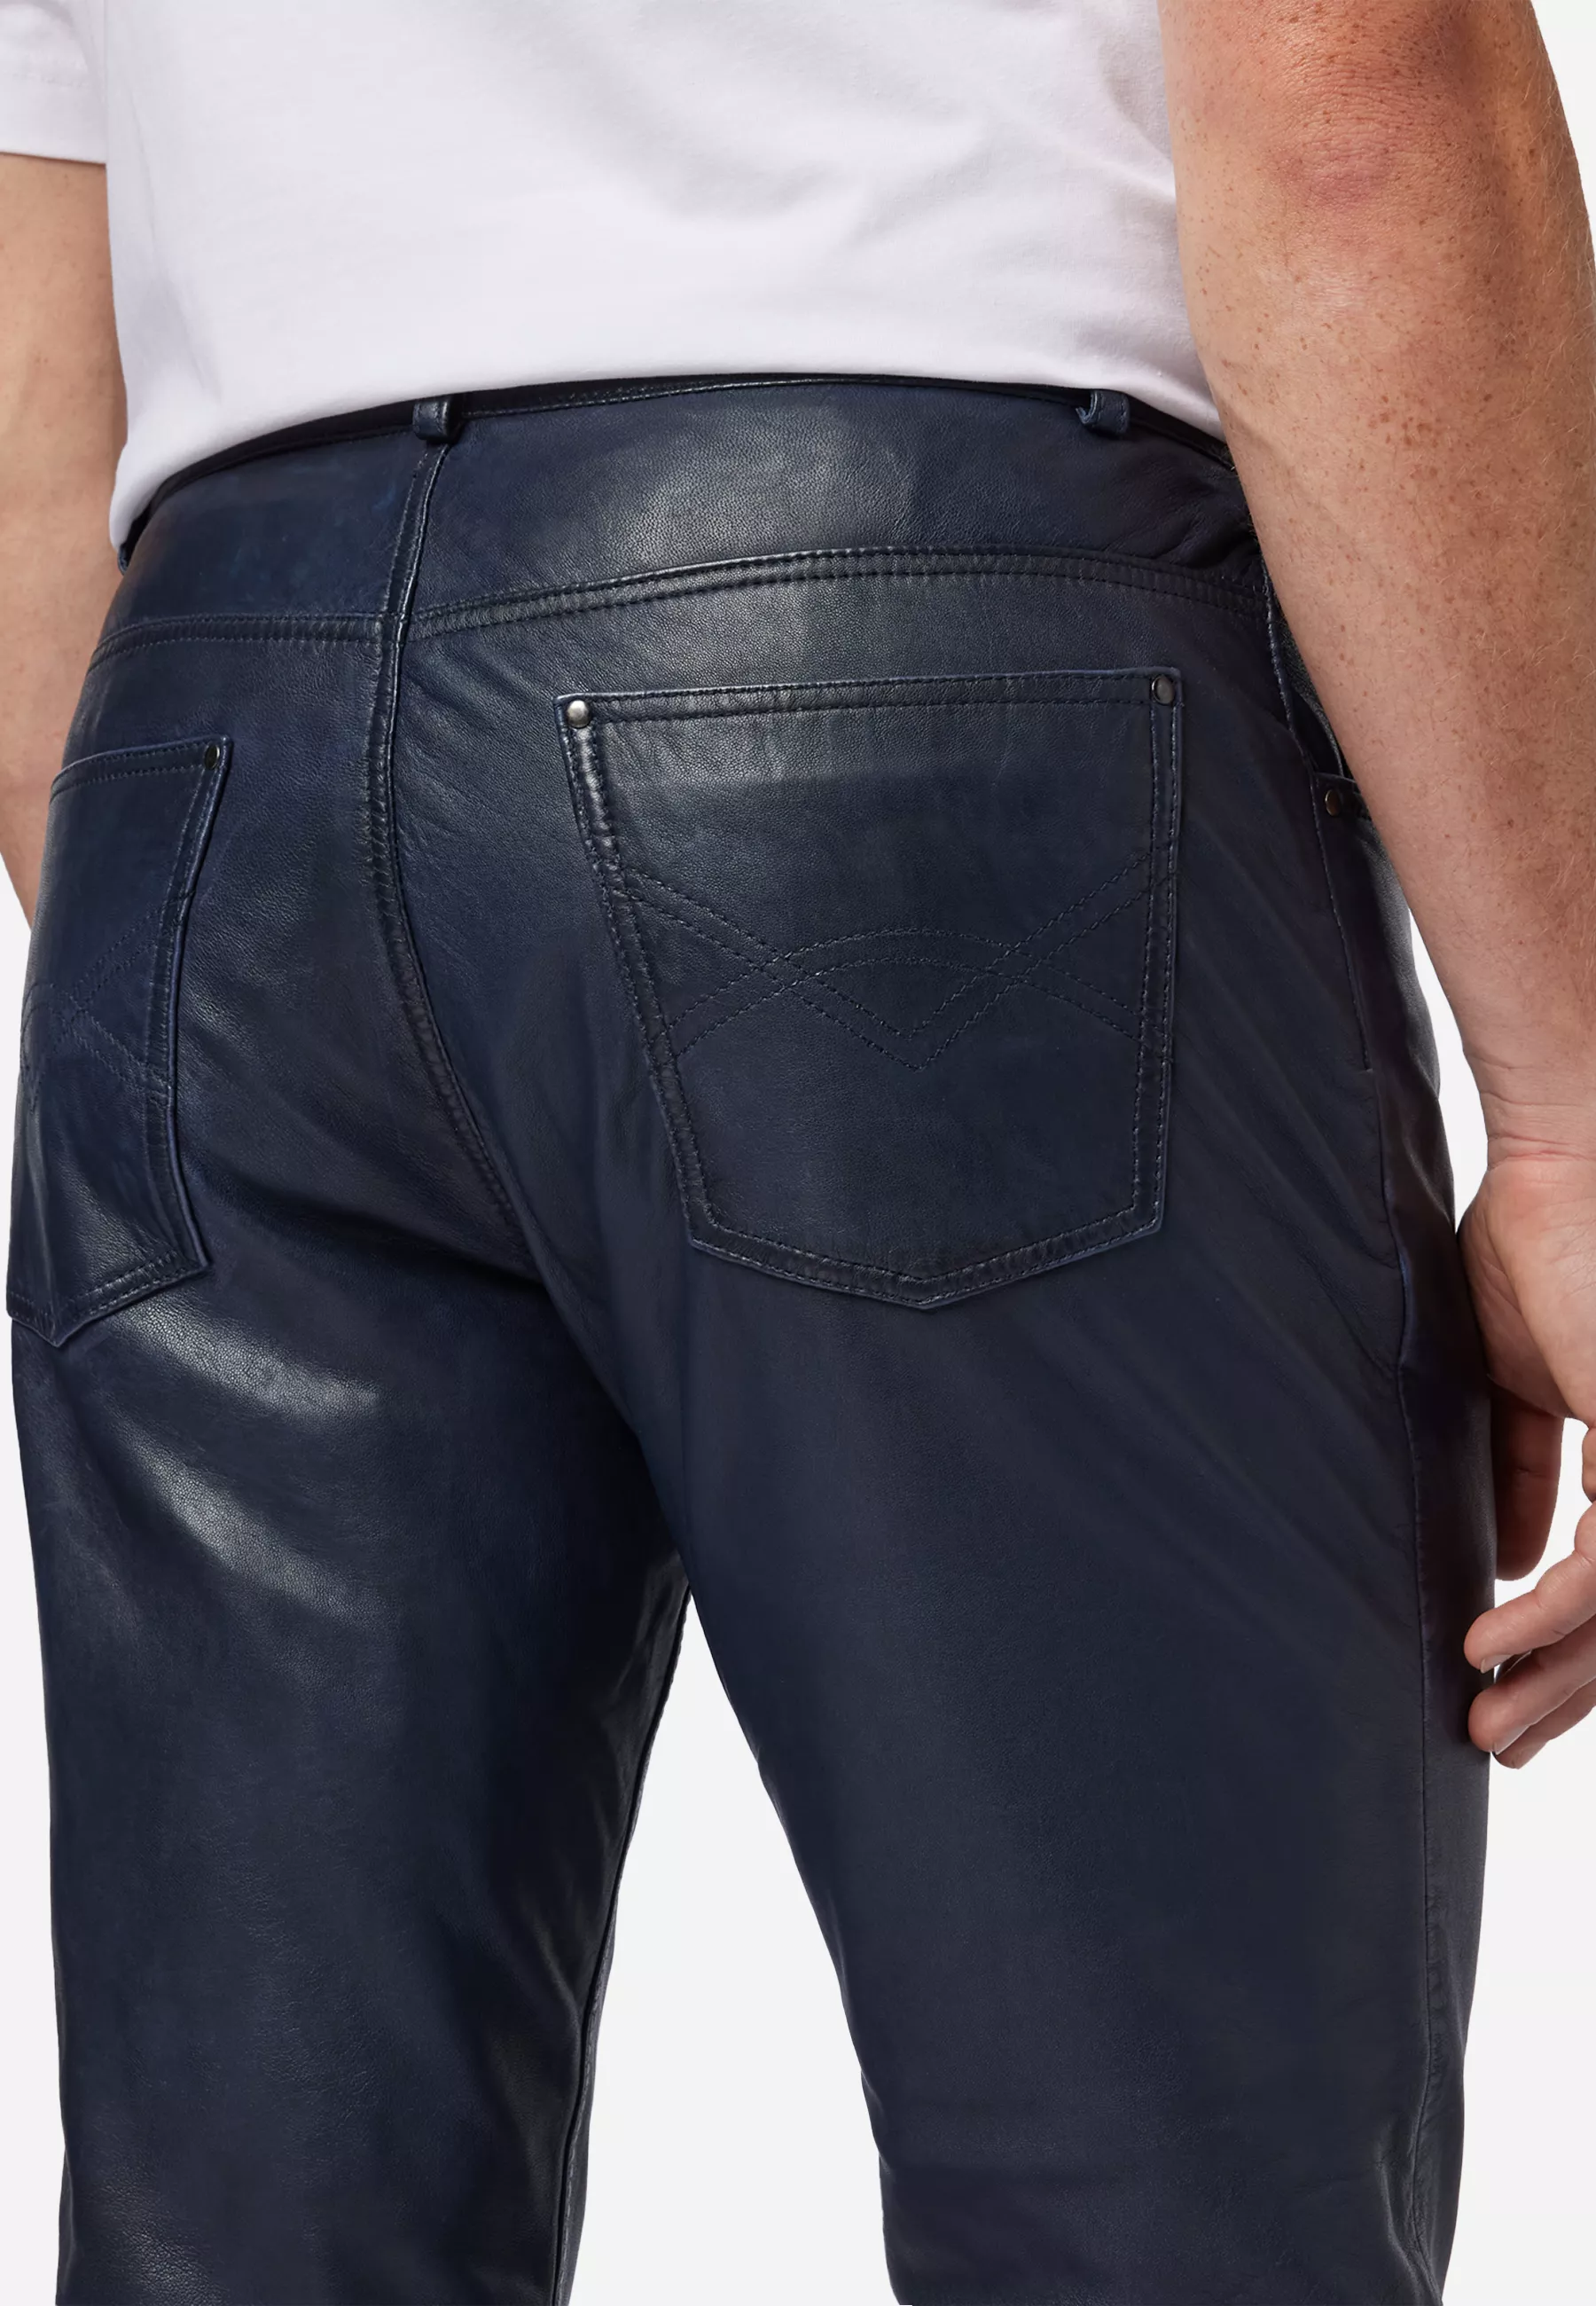 Herren Lederhose Trant Pant in Blau von Ricano, Detailansicht vom Five Pocket Look am Model